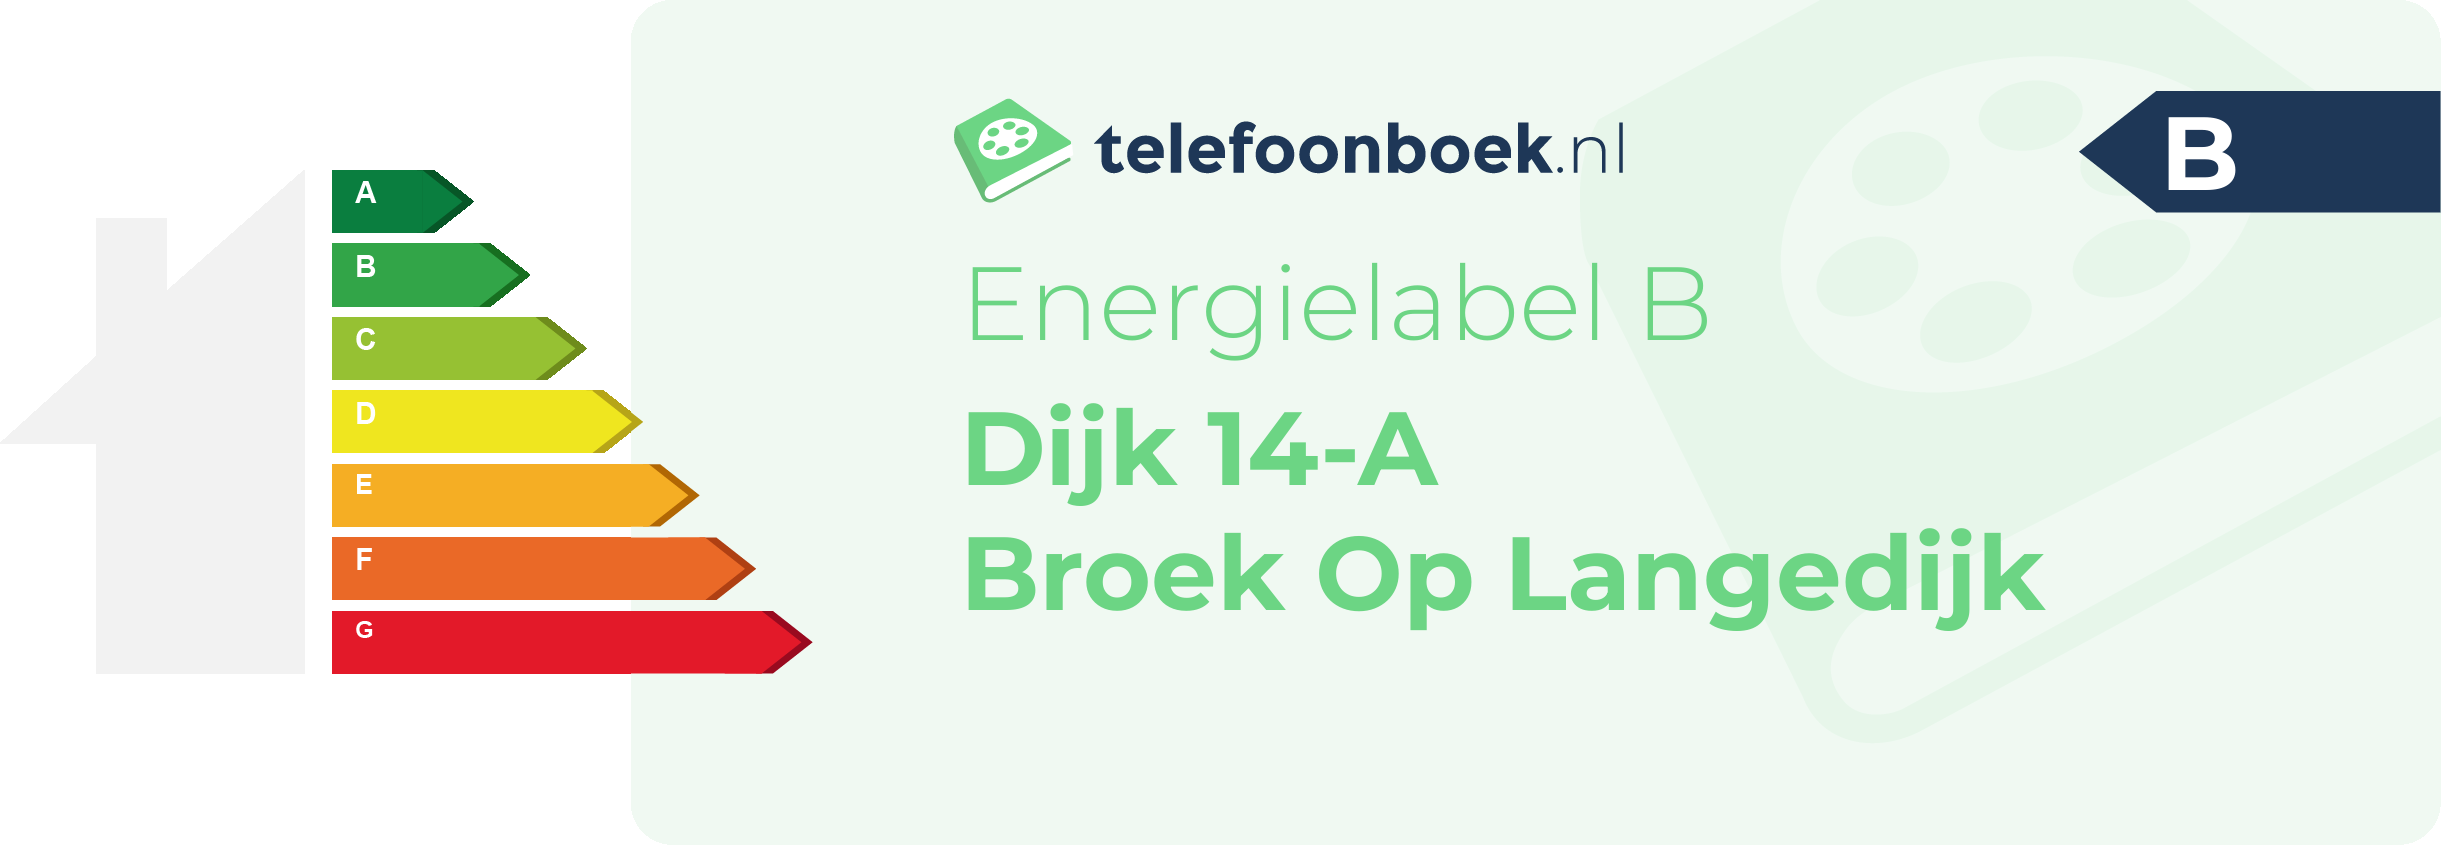 Energielabel Dijk 14-A Broek Op Langedijk